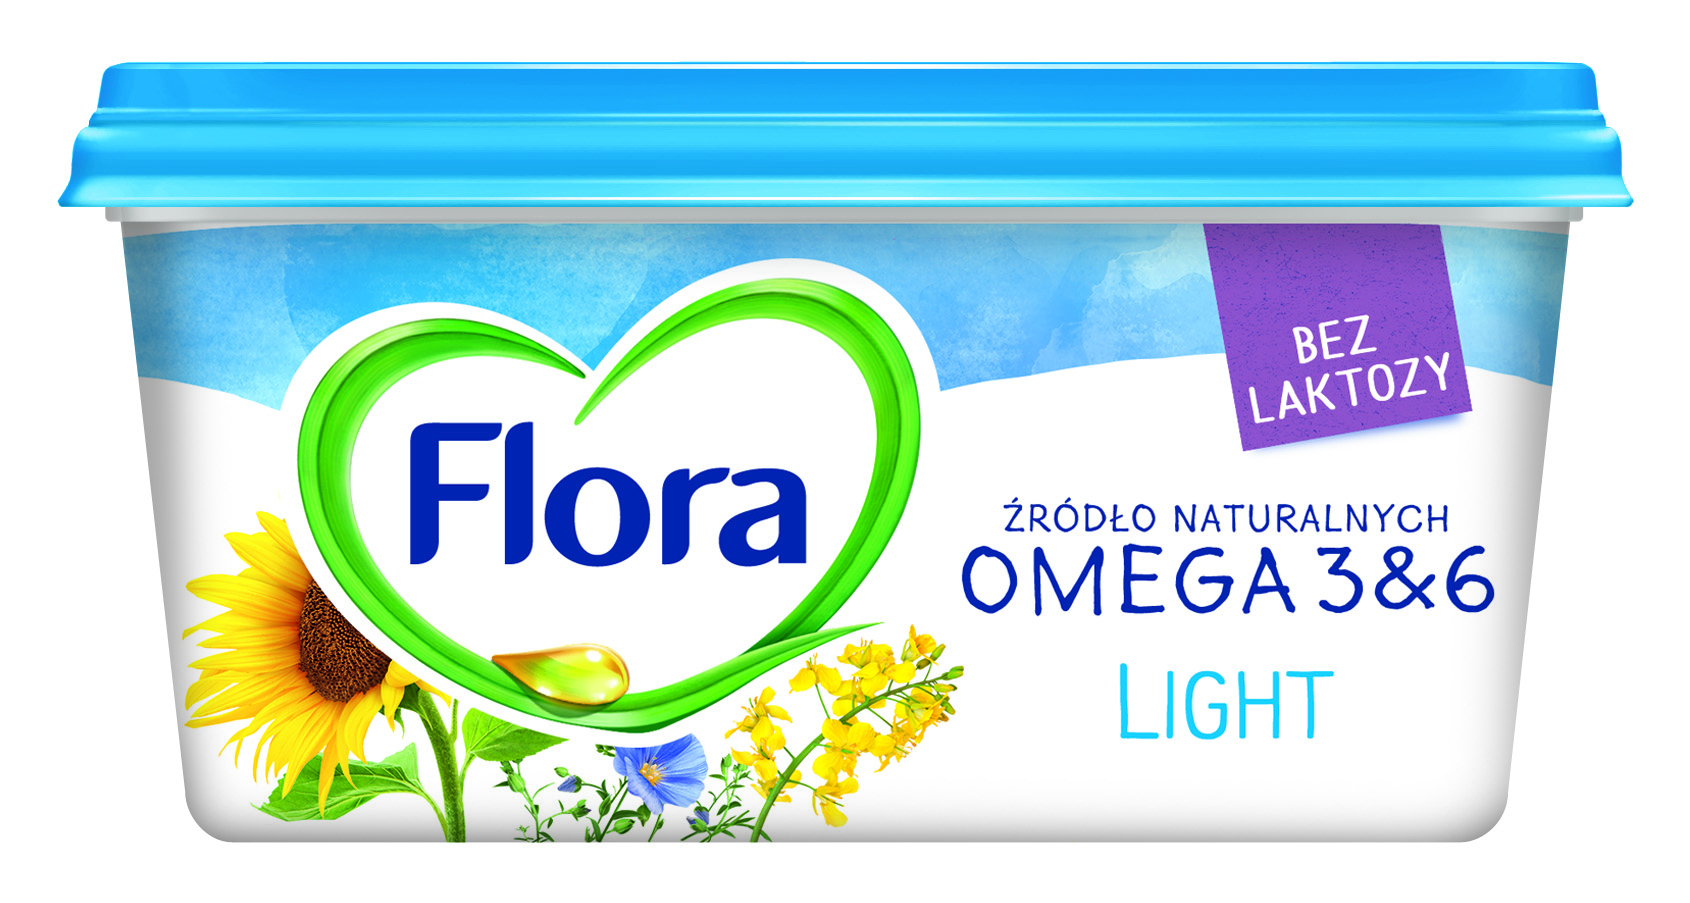 Stramme bekymre Selvrespekt FLORA LIGHT 400g - Czytamy Etykiety - Analiza etykiet produktów spożywczych  i kosmetycznych